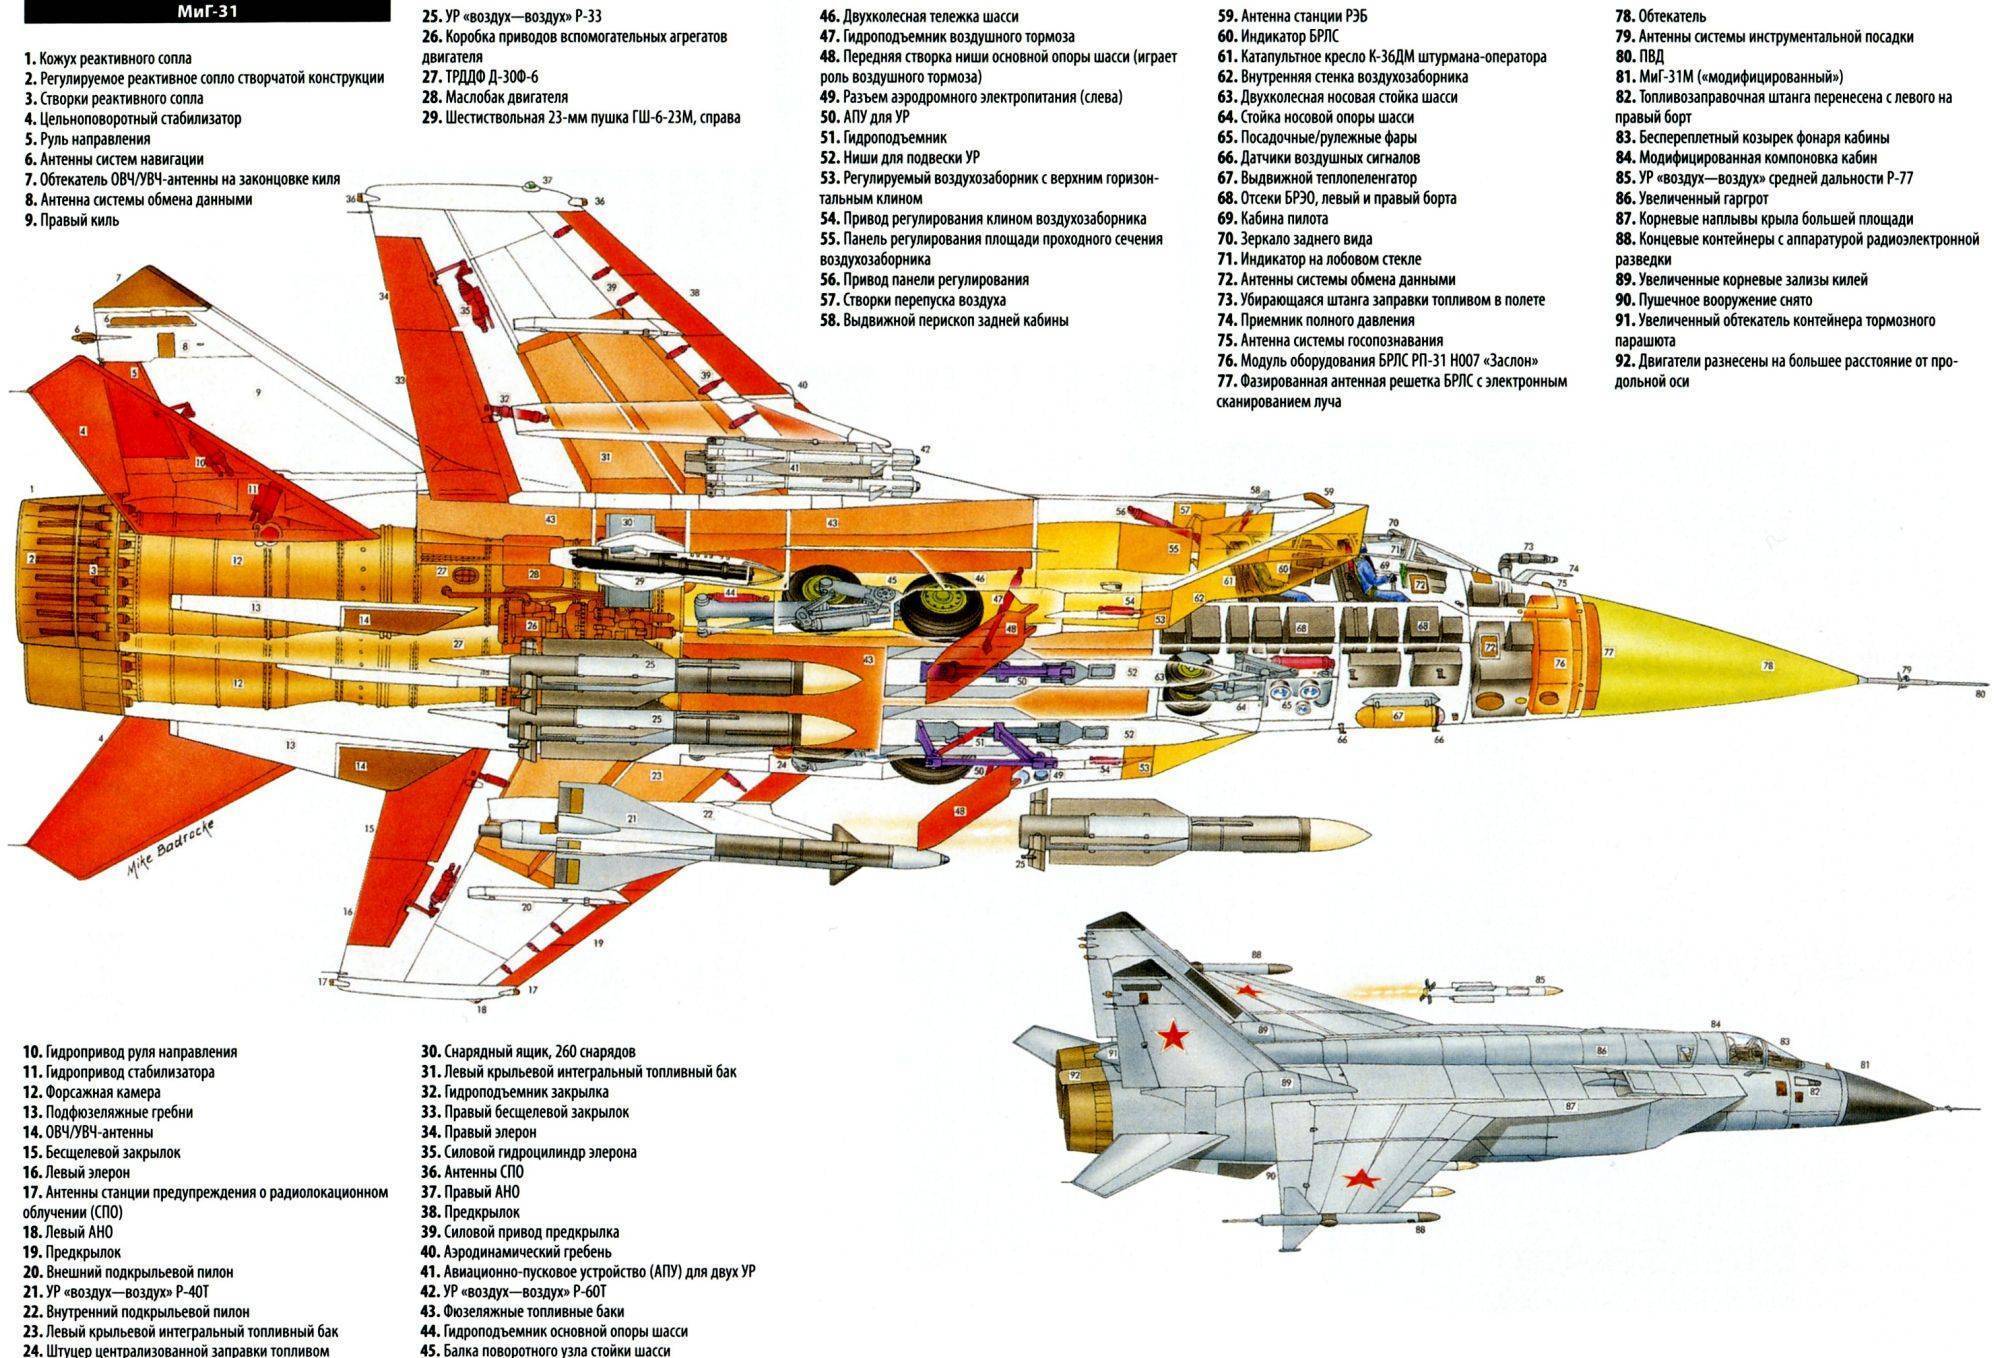 Миг-27. фото, история, характеристики самолета